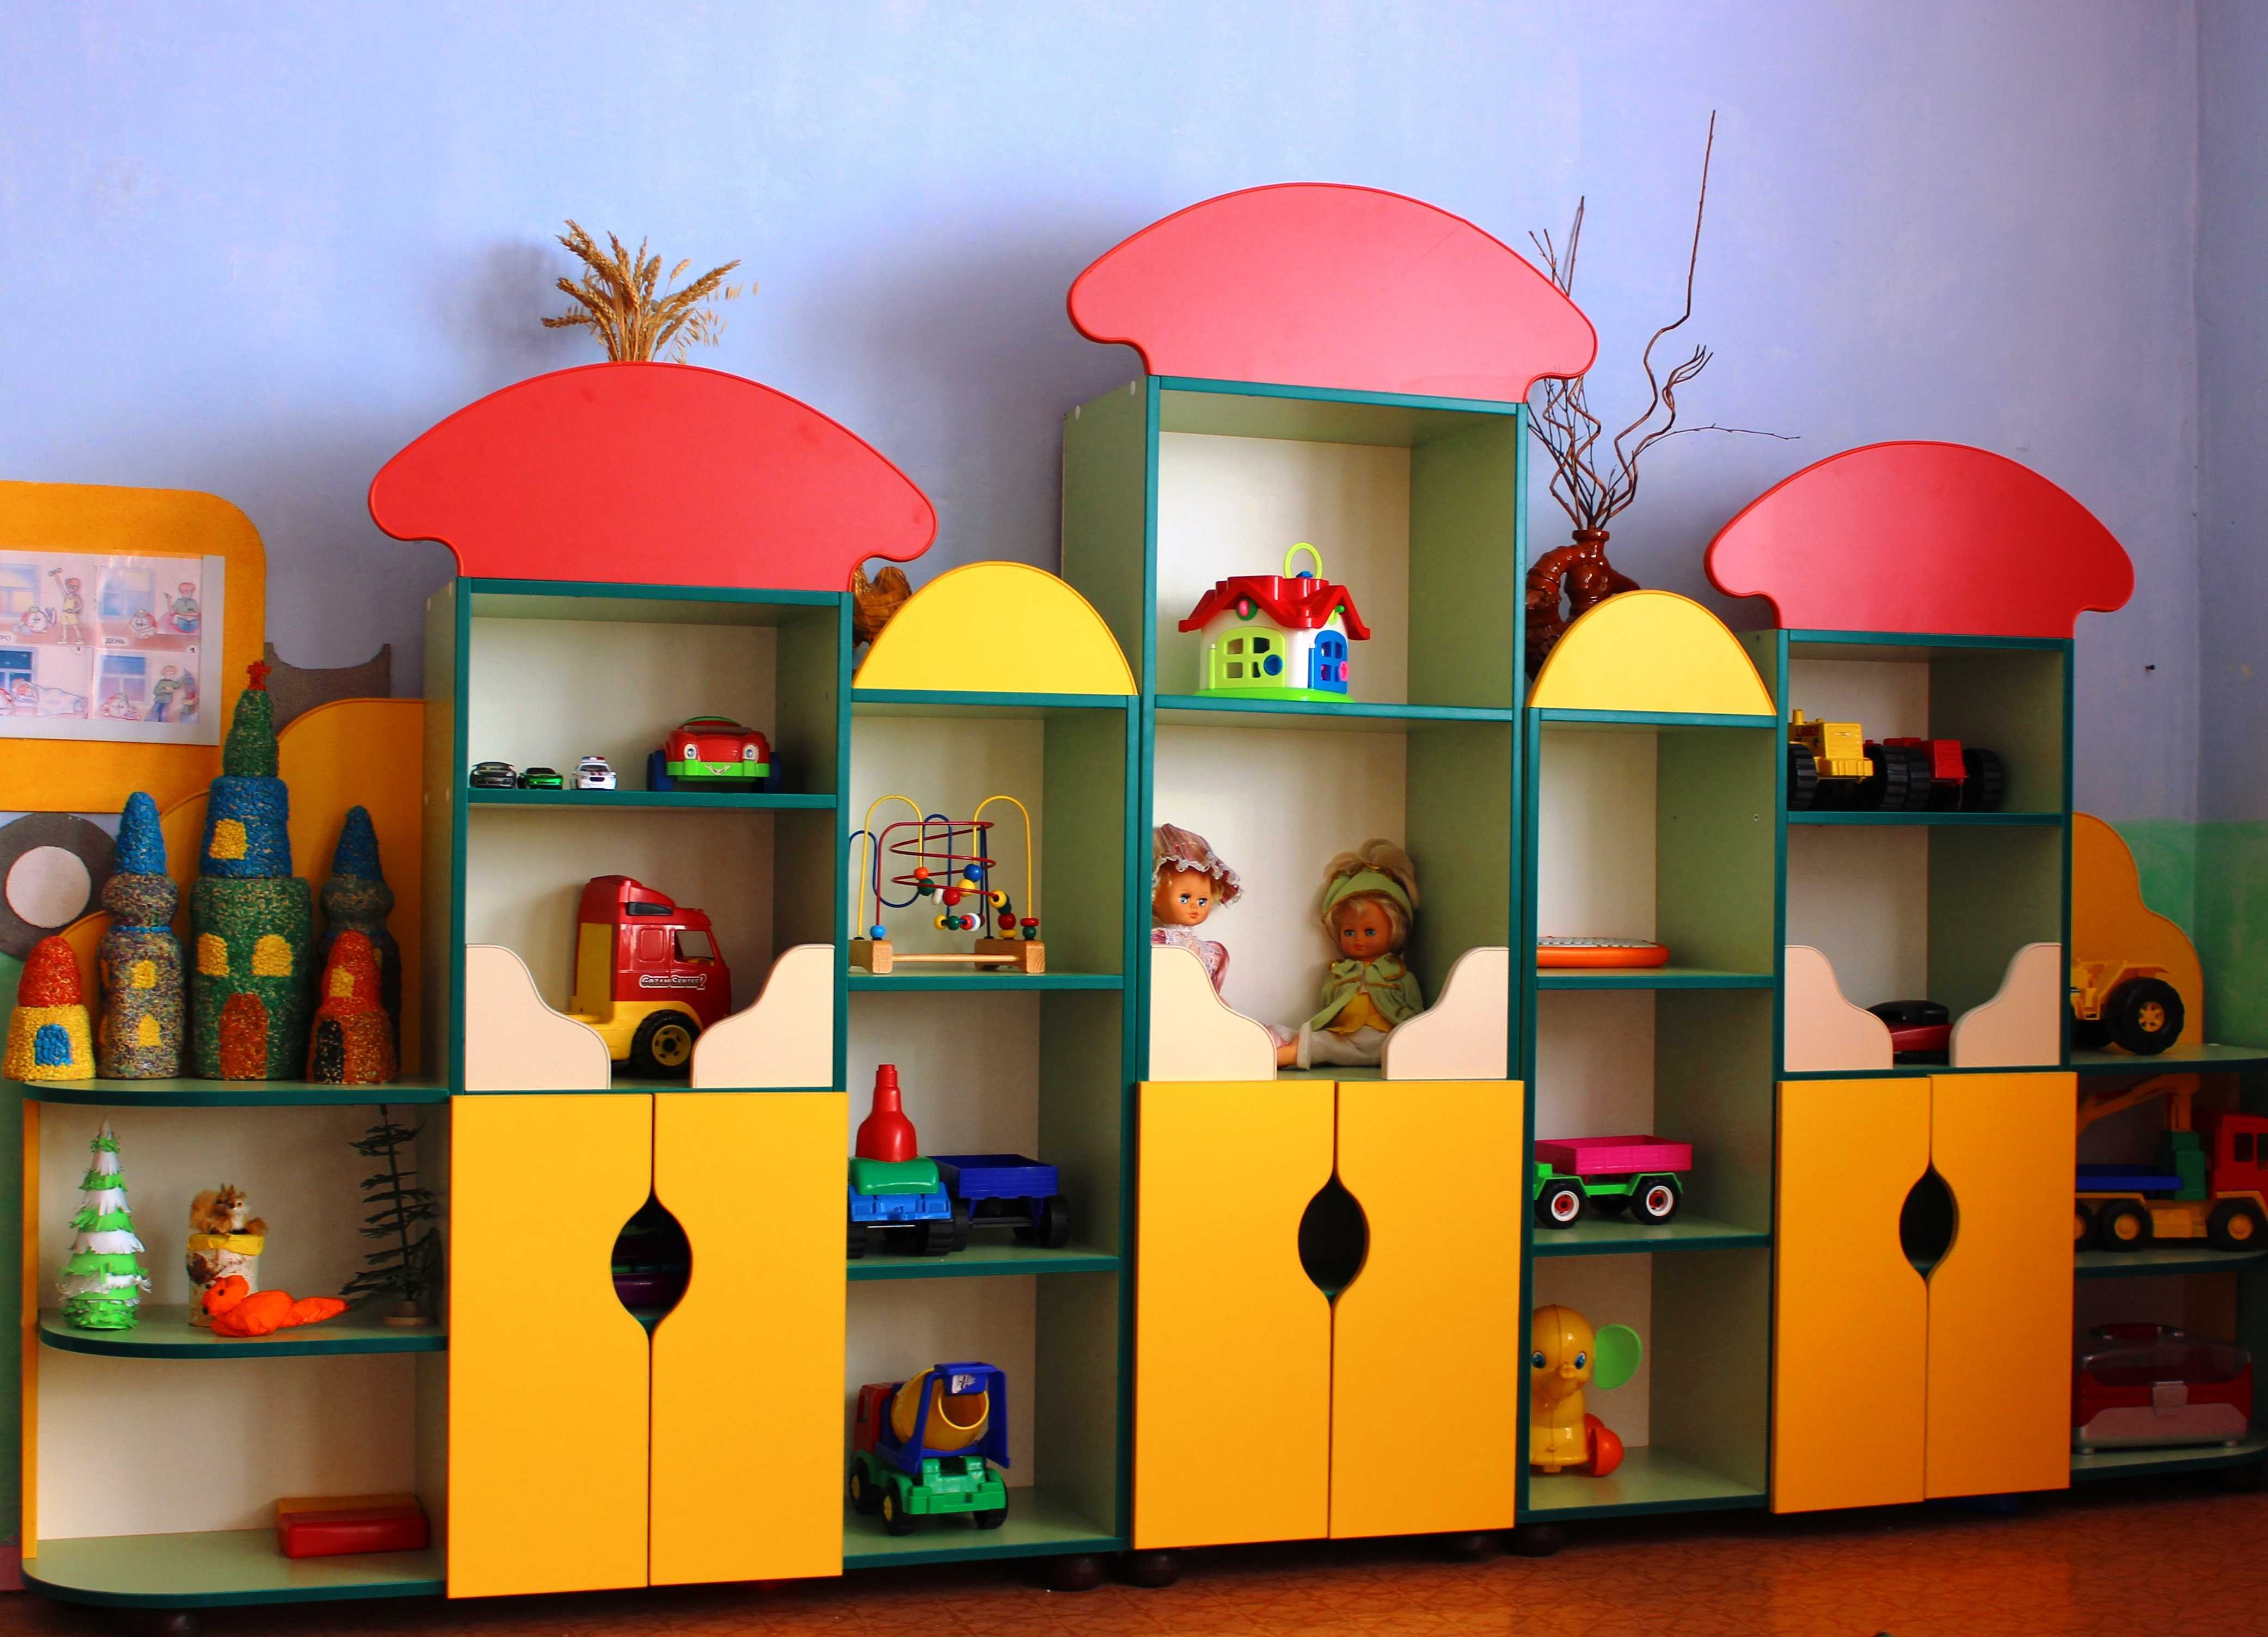 Помимо эстетичного внешнего вида детская мебель должна быть максимально безопасной, комфортной и функциональной.